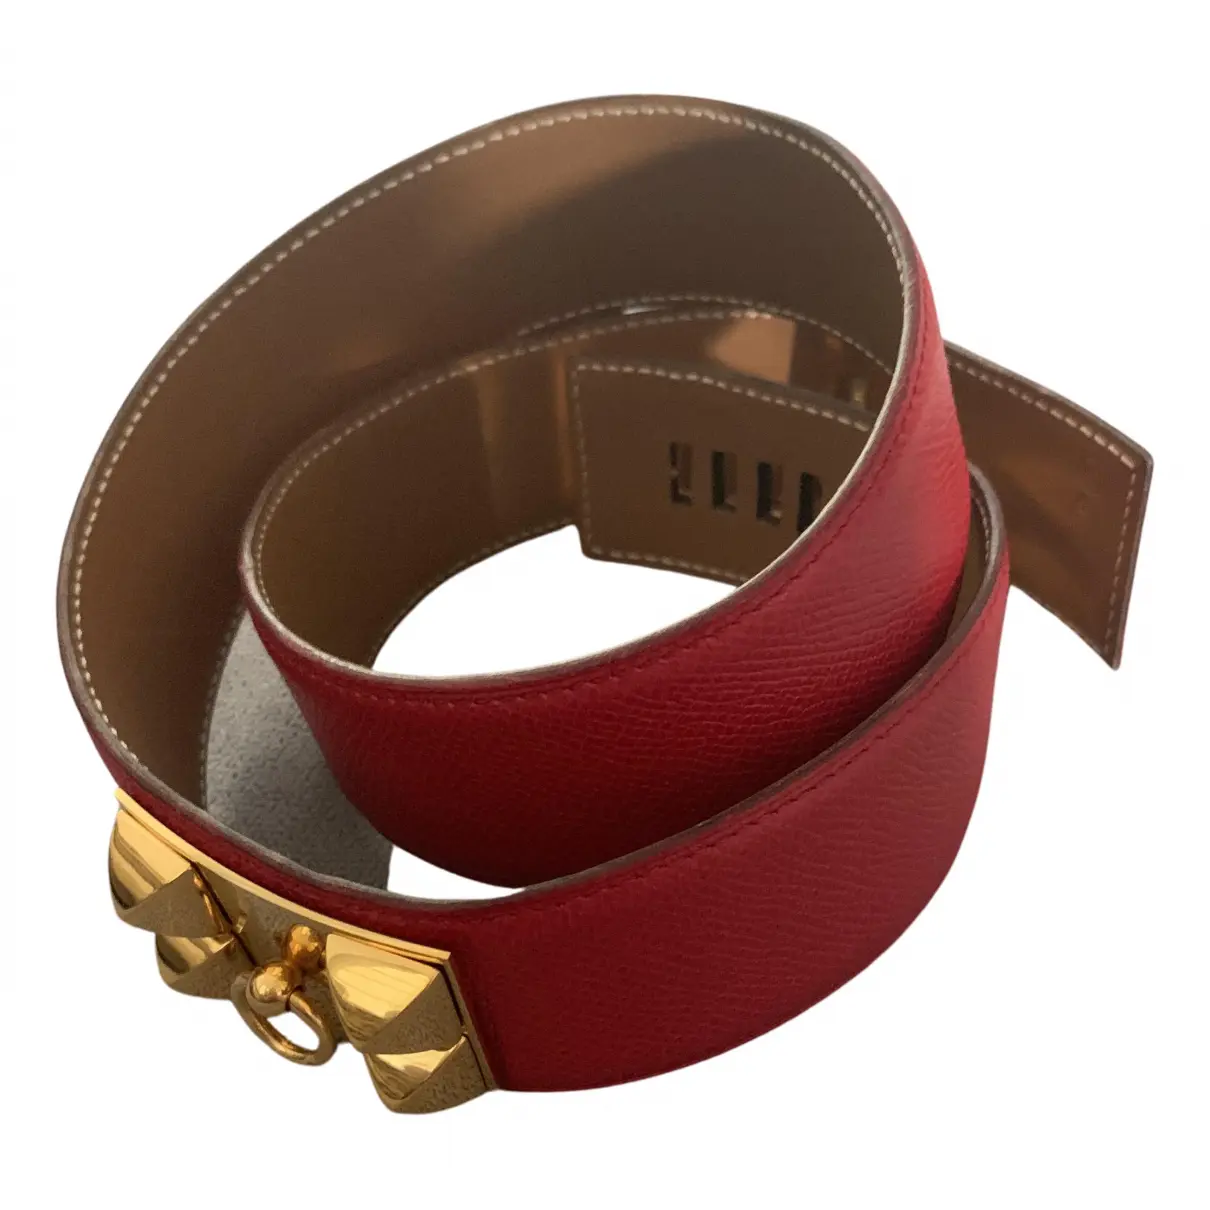 Collier de chien leather belt Hermès - Vintage